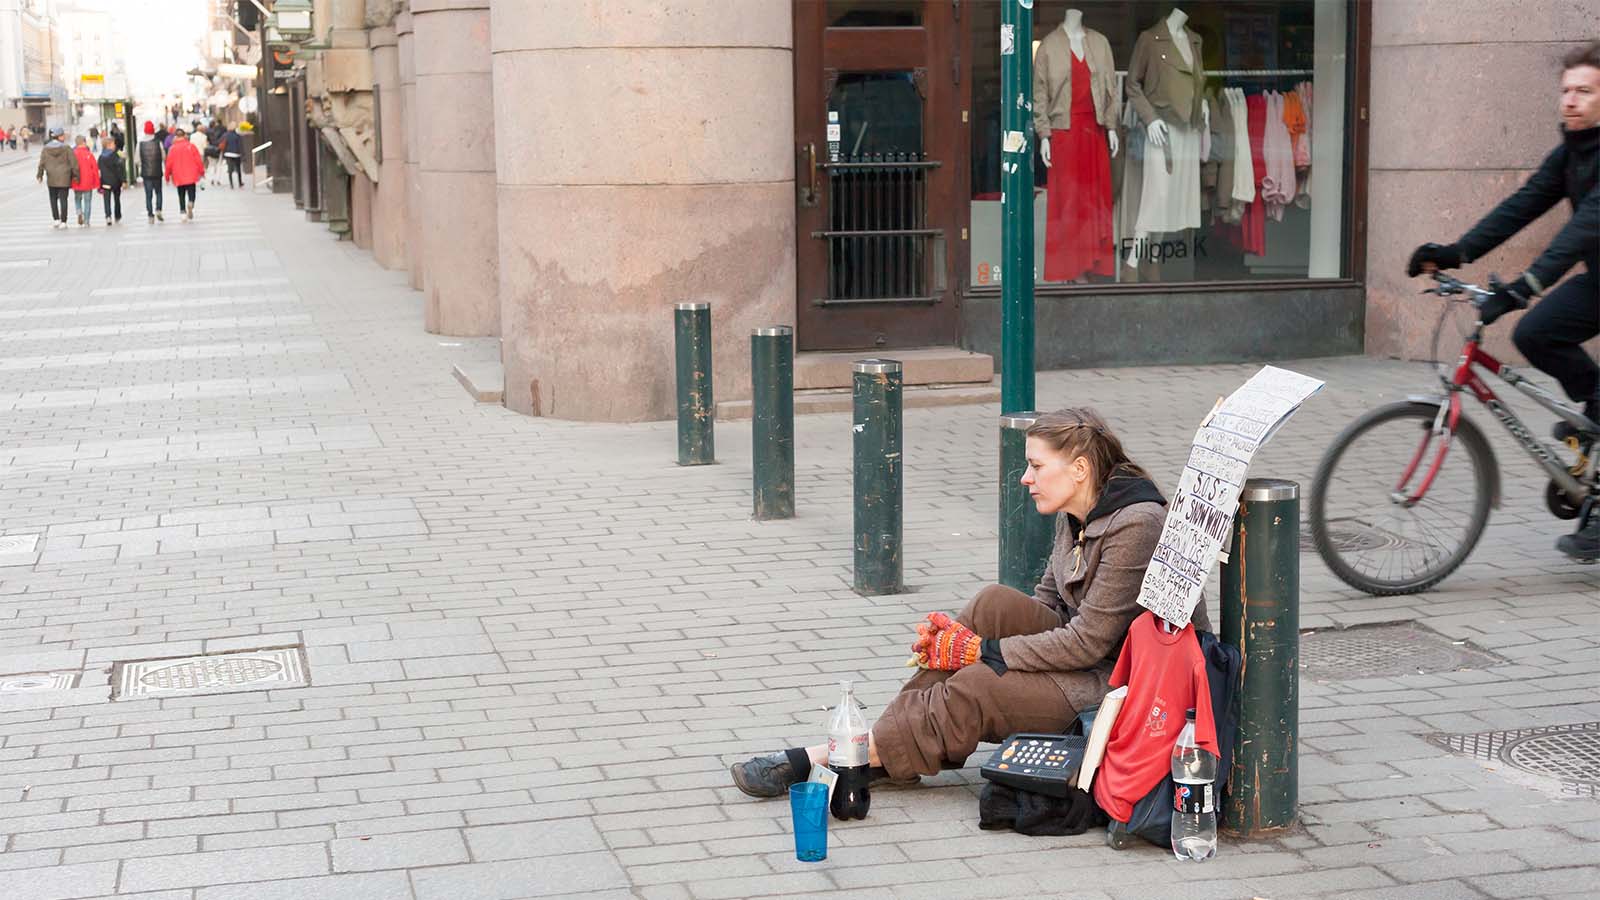 חסרת בית ברחובות הלנסיקי, פינלנד. מרץ 2014 (צילום: Aleksei Andreev / Shutterstock.com)